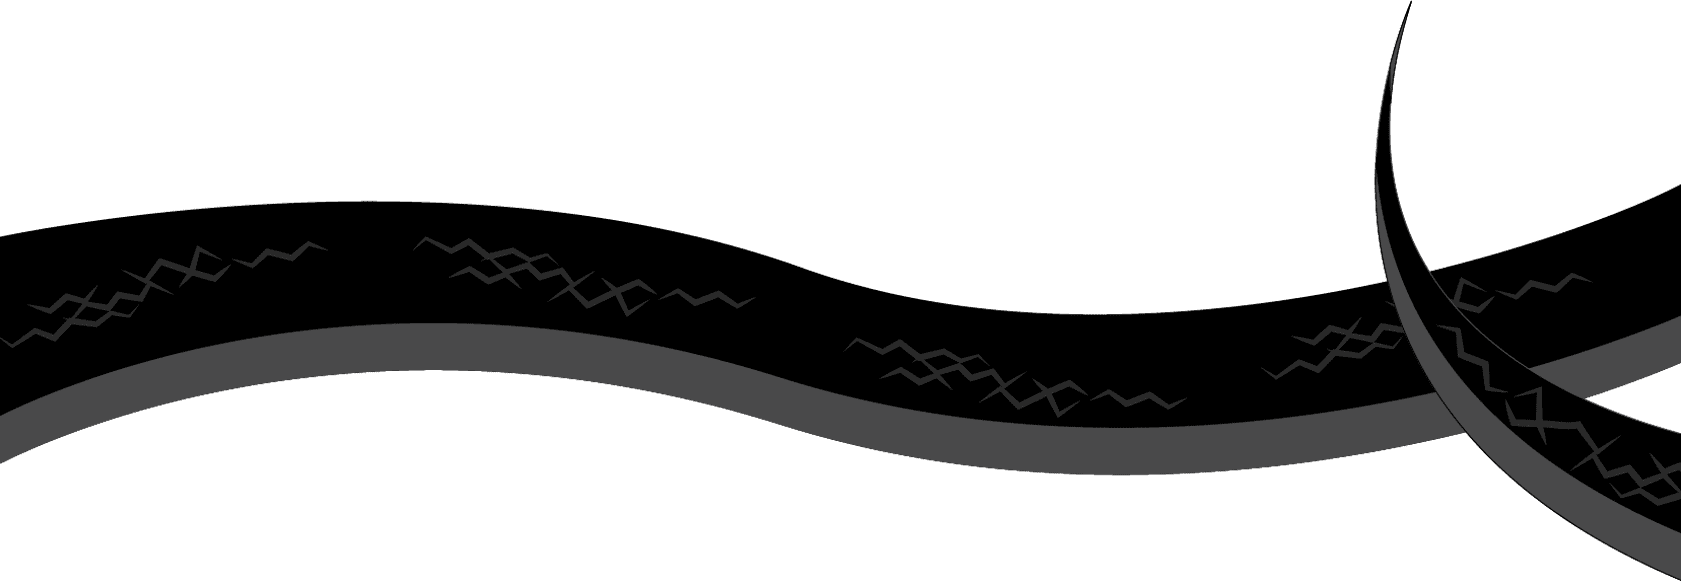 ilustración del cuerpo de una serpiente mamba negra horizontal